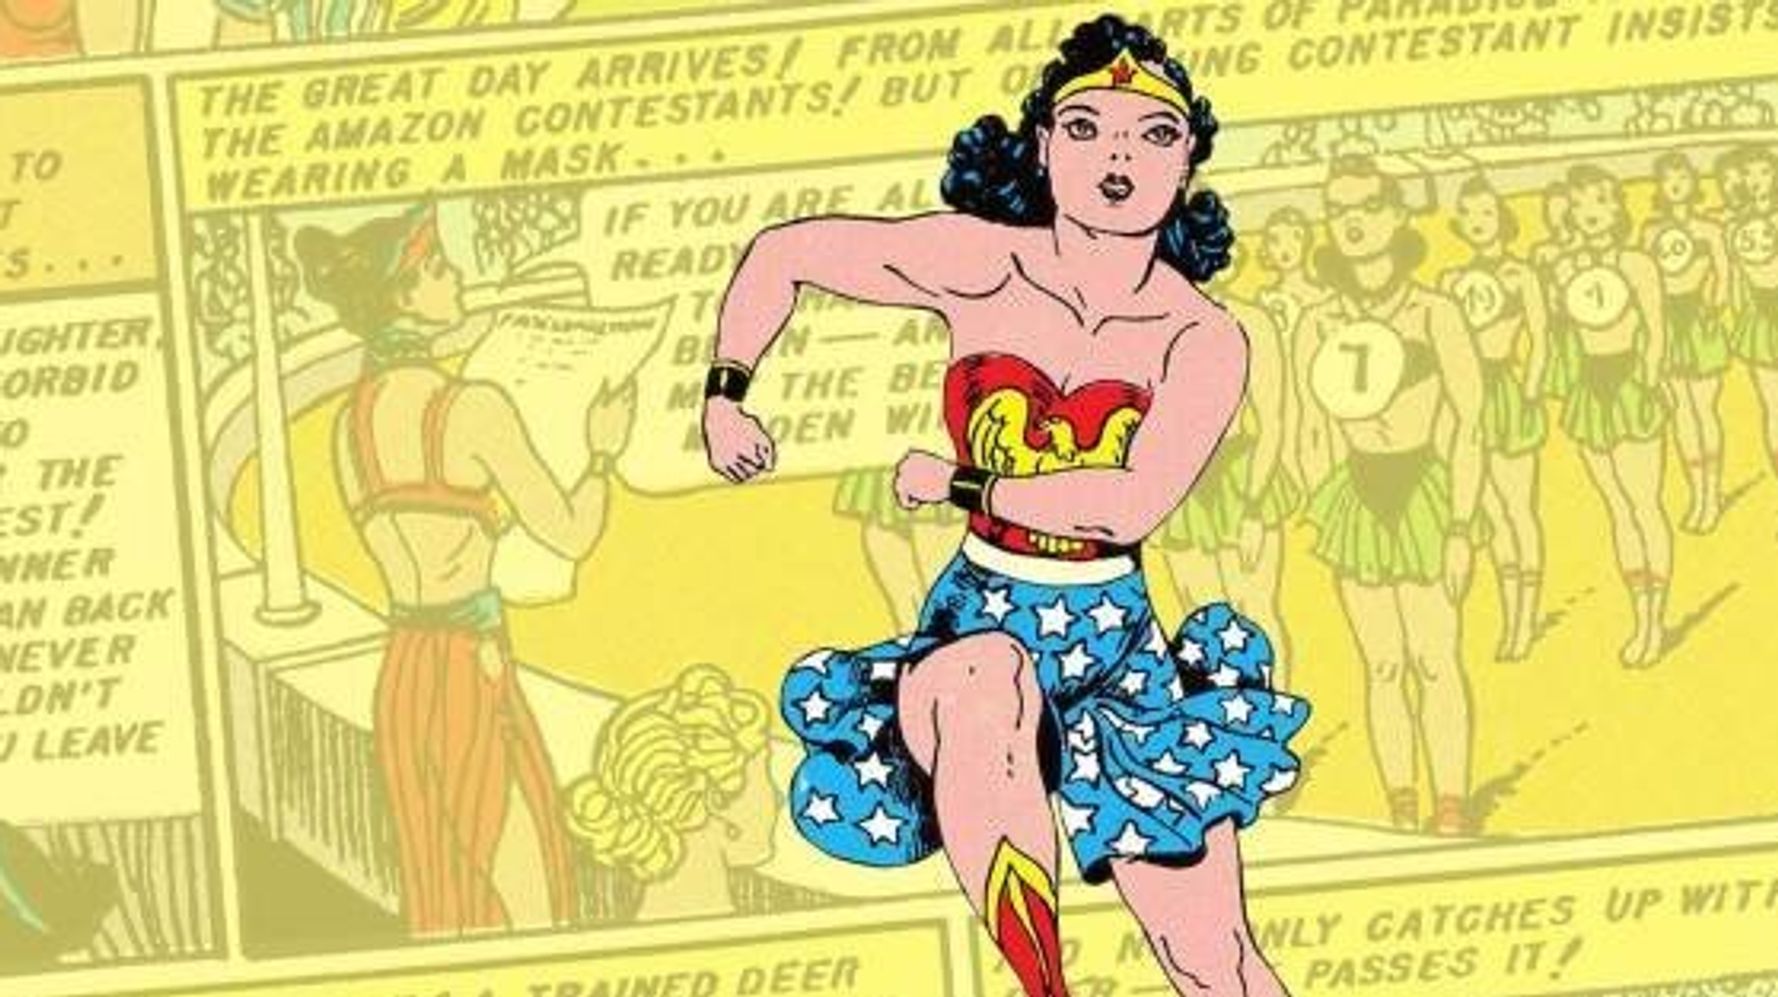 Wonder Woman - Toons Mag